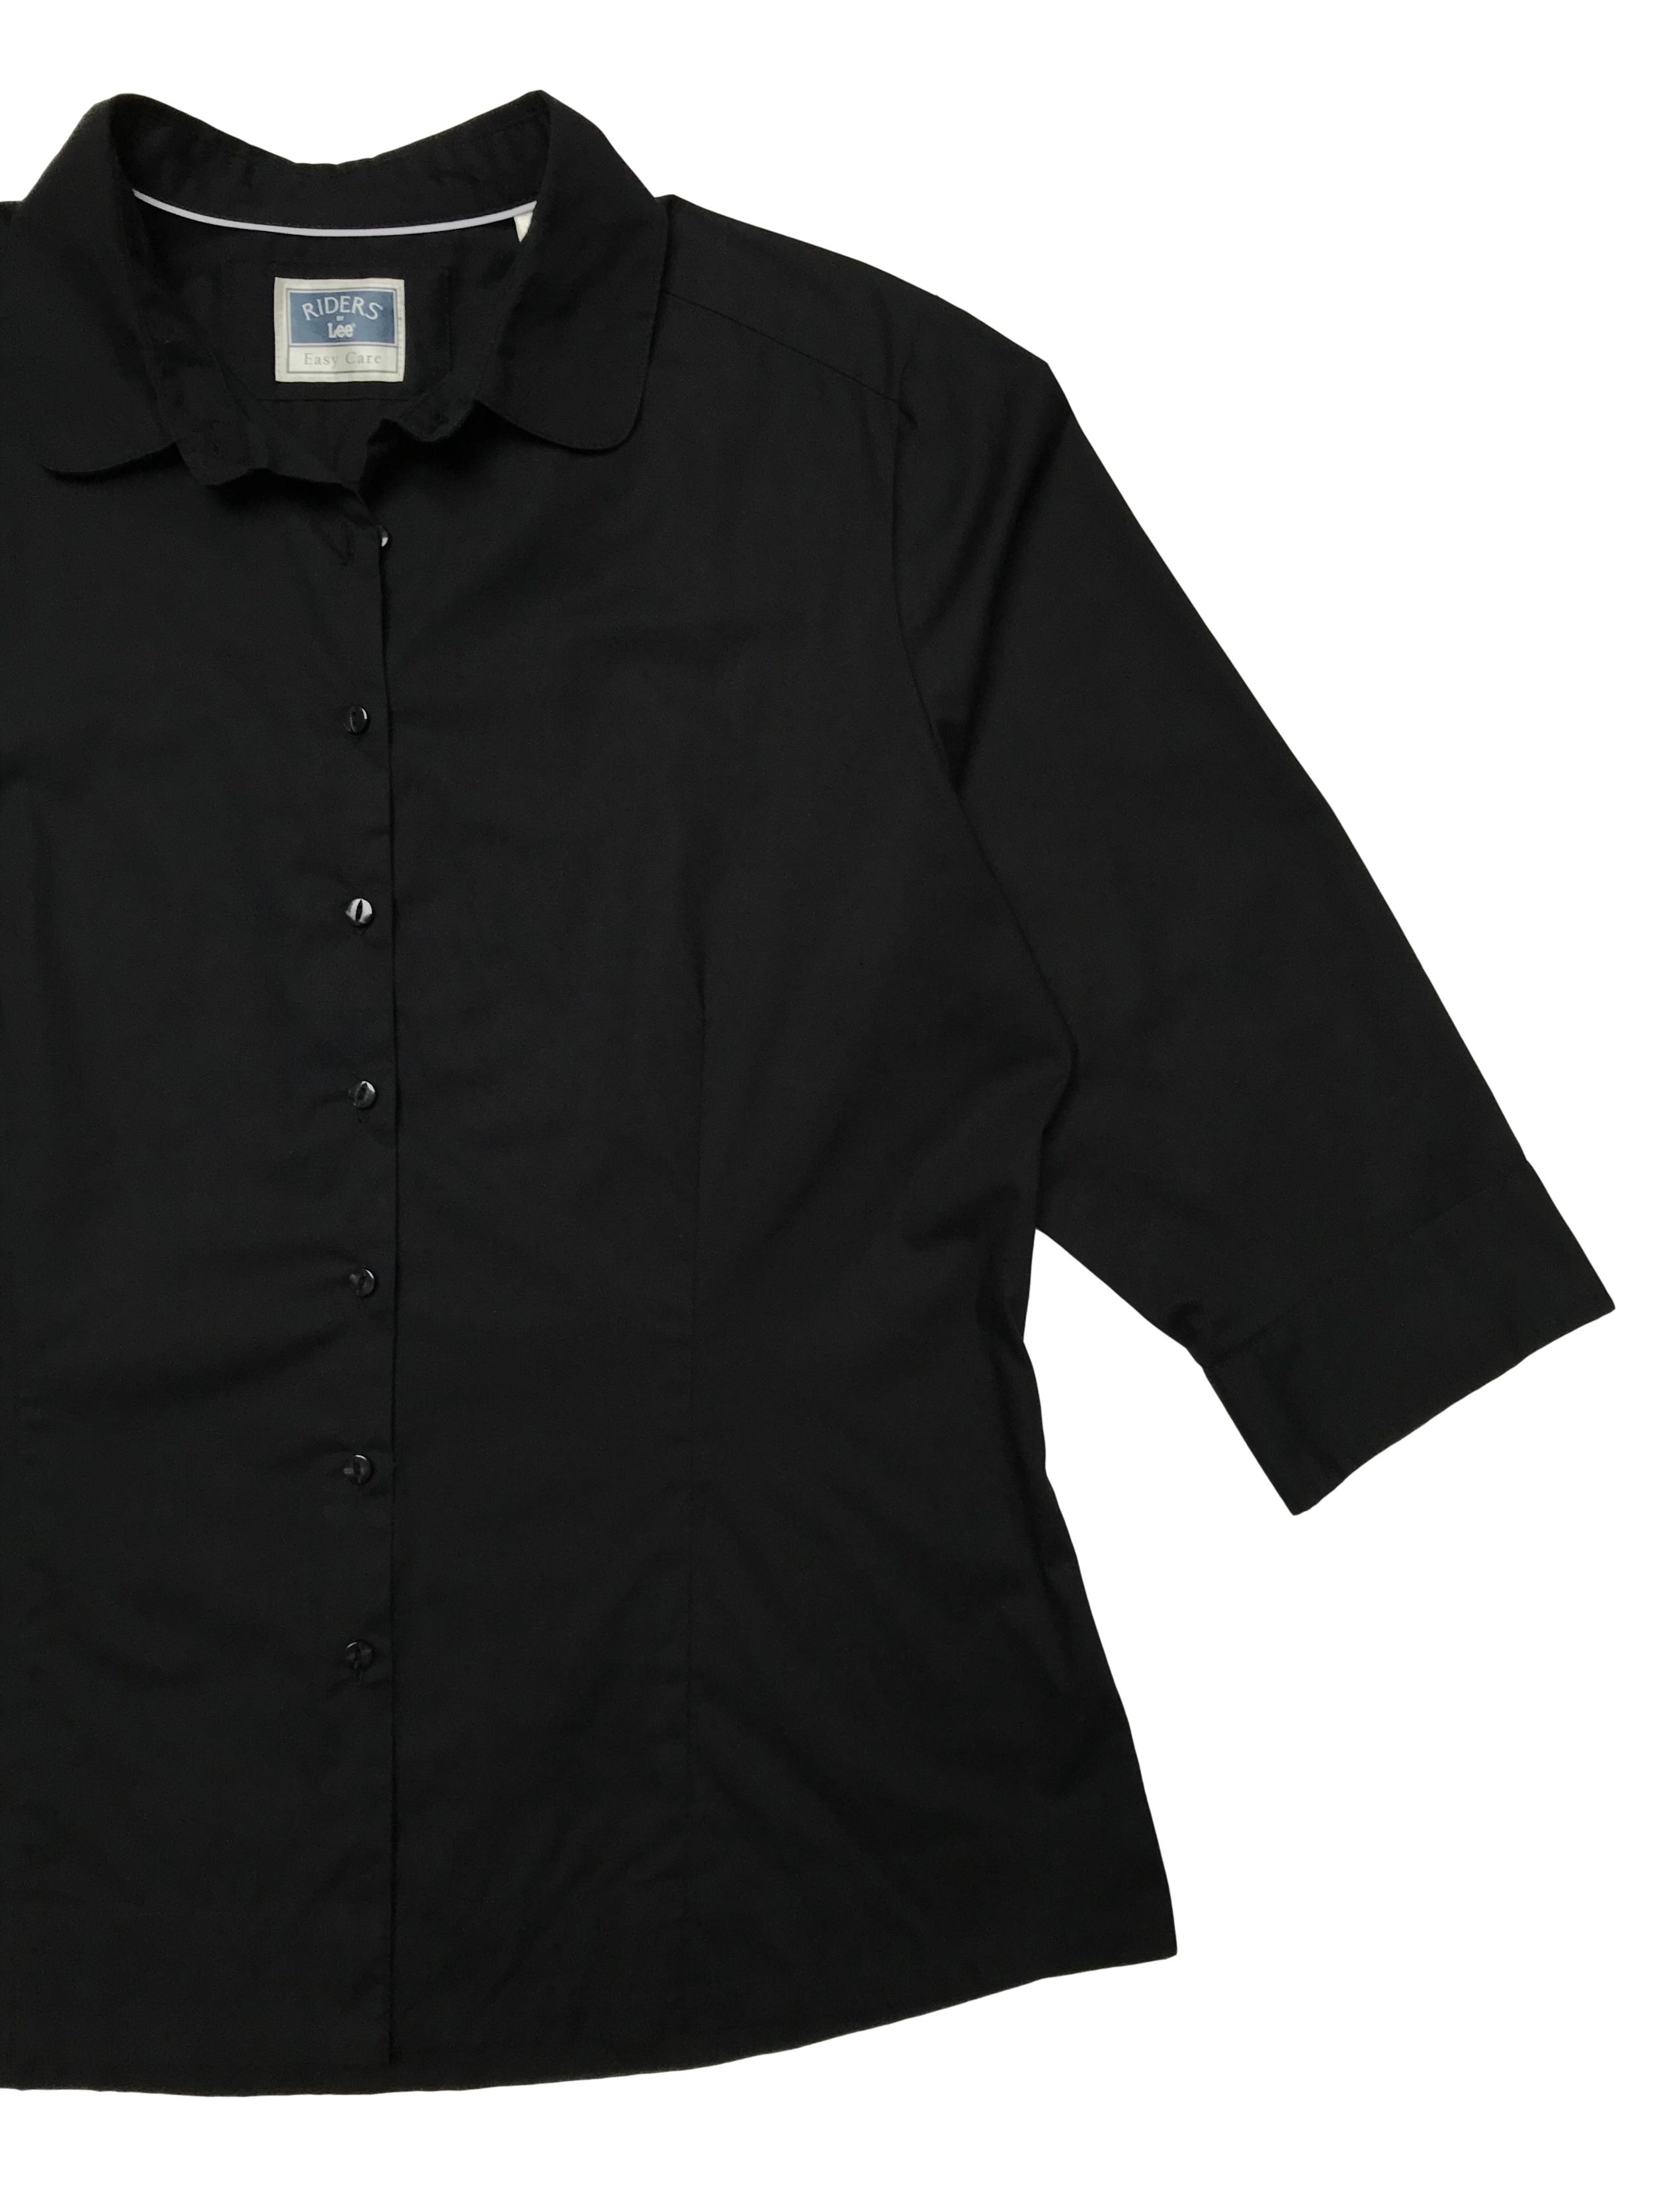 Blusa Lee con cuello redondeado, negra  de algodón camisa, mangas 3/4 con botones, tiene pinzas. Busto 120 Cintura 100cm Largo 62cm. Precio original S/ 140